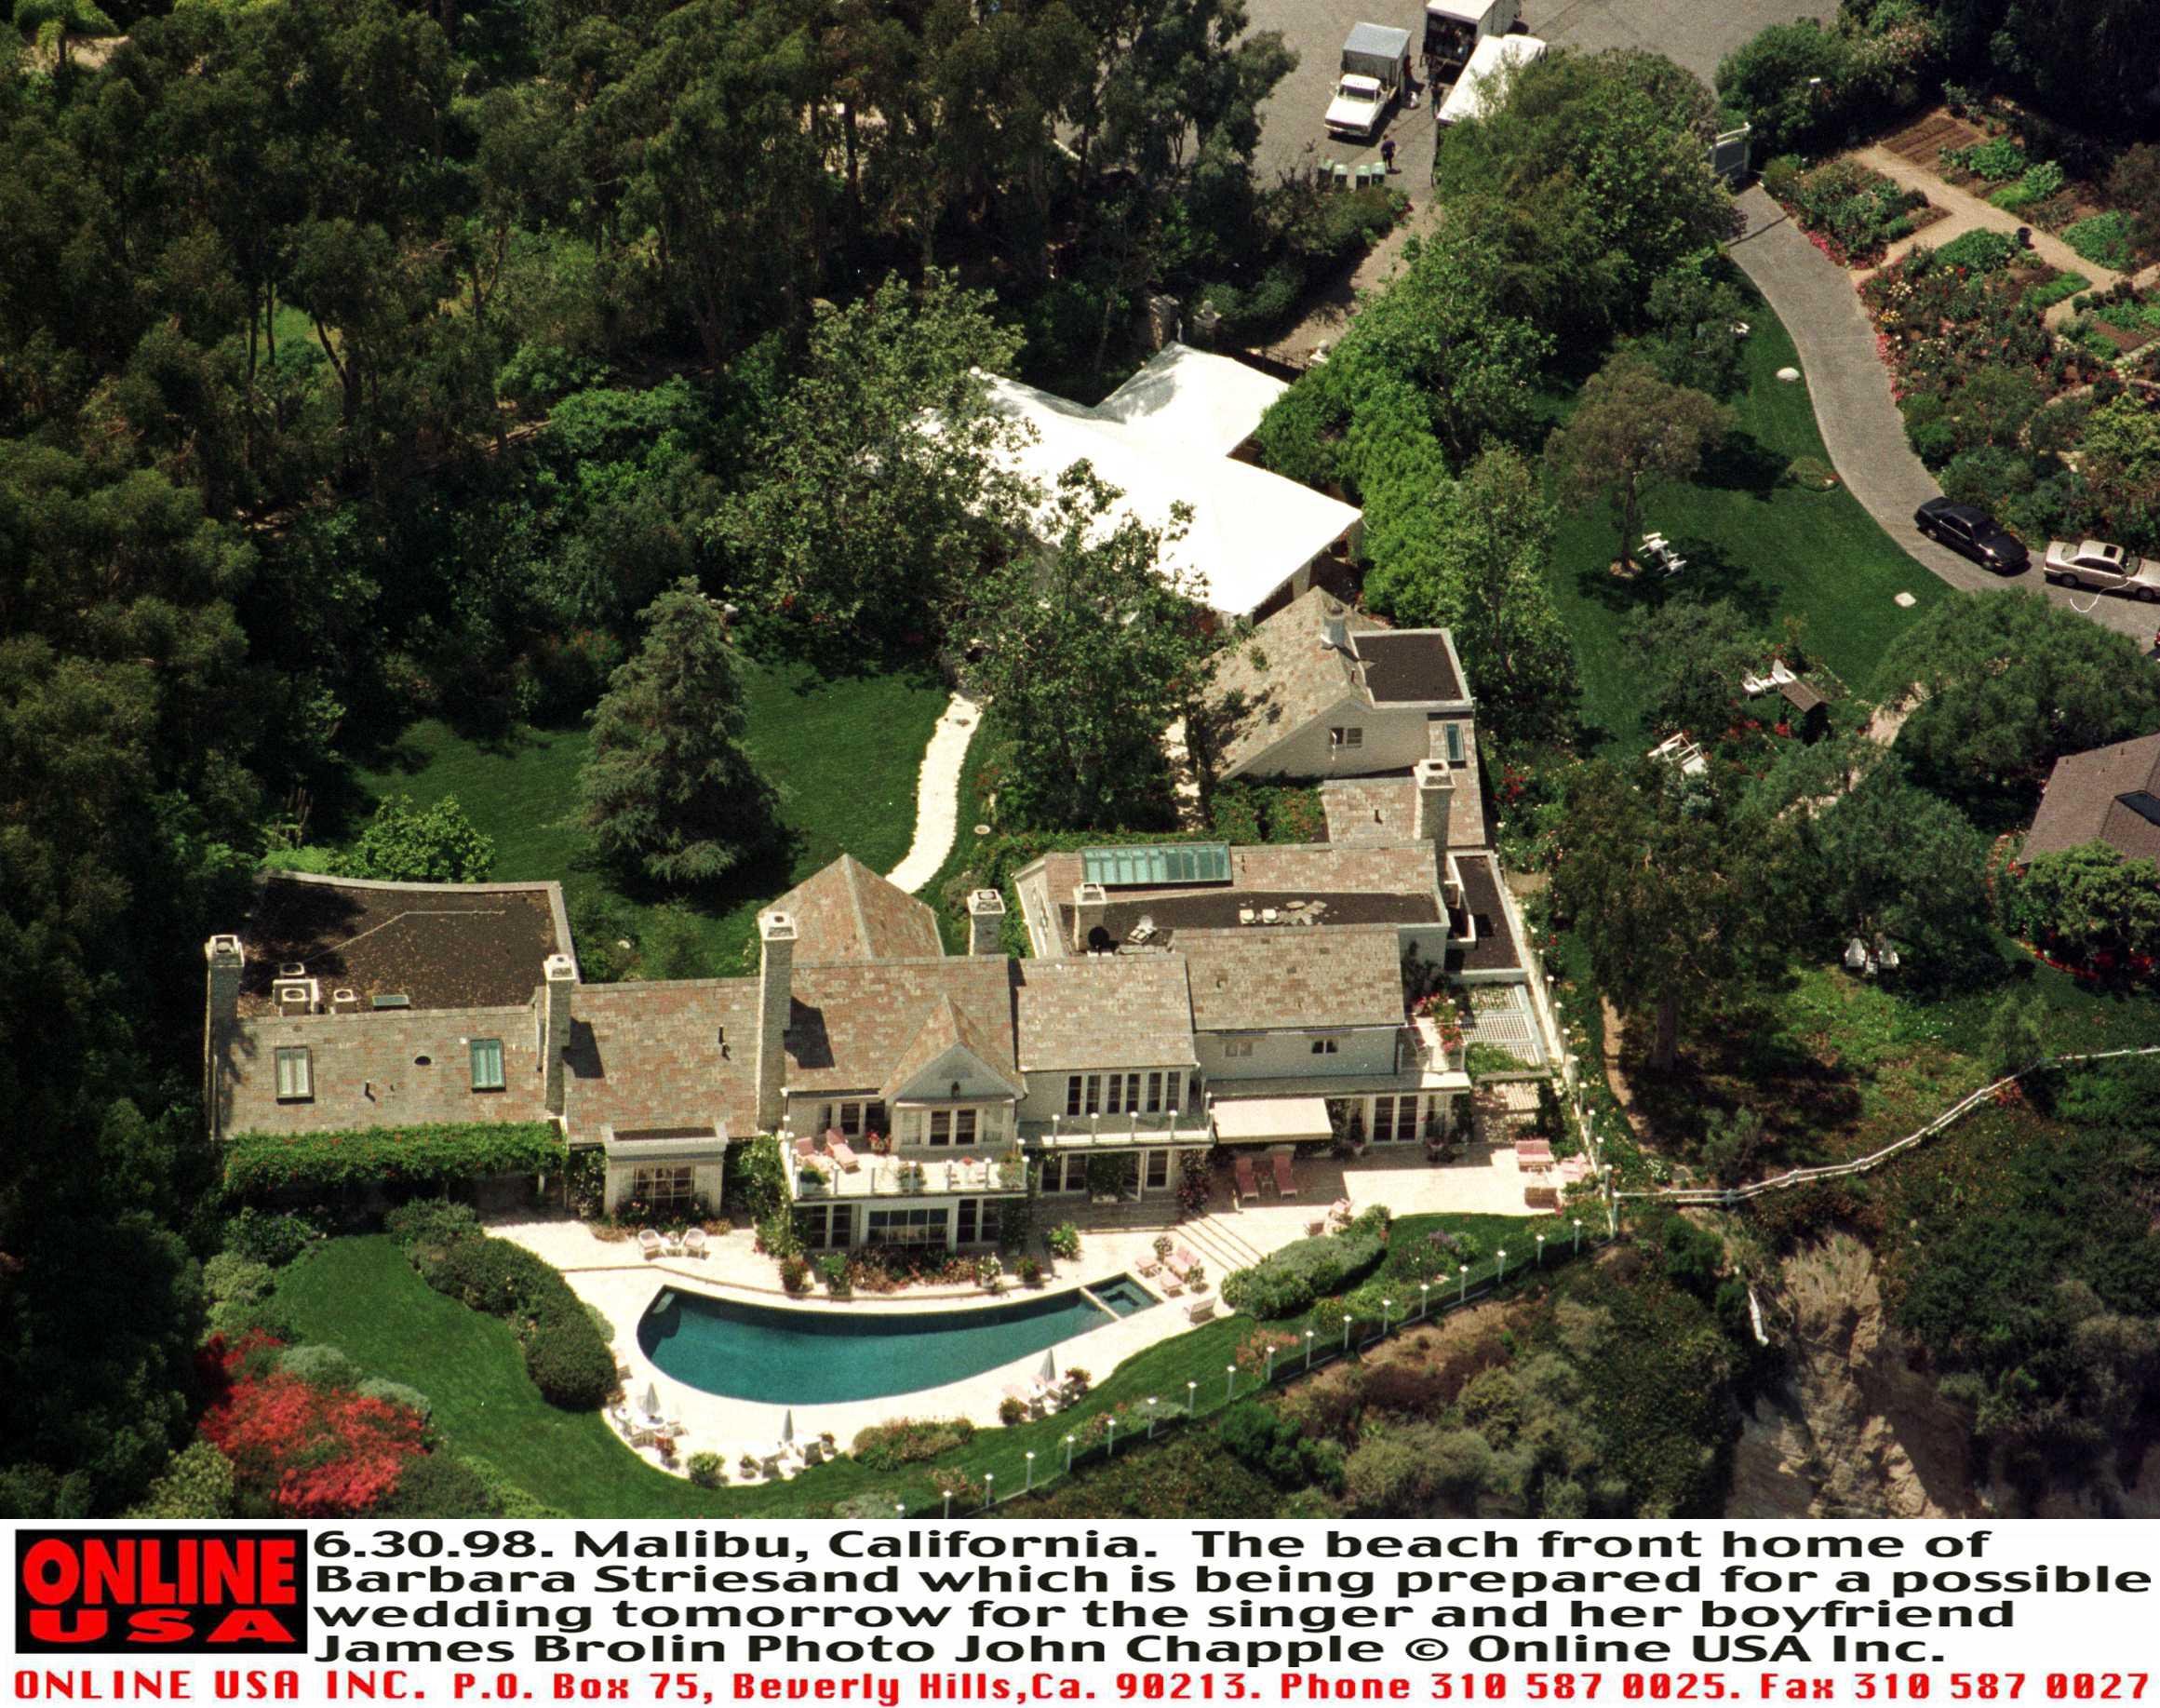 Das Haus am Strand von Barbra Streisand, das für eine mögliche Hochzeit morgen vorbereitet wird, für die Sängerin und ihren Freund James Brolin 30. Juni 1998. Malibu, Kalifornien | Quelle: Getty Images